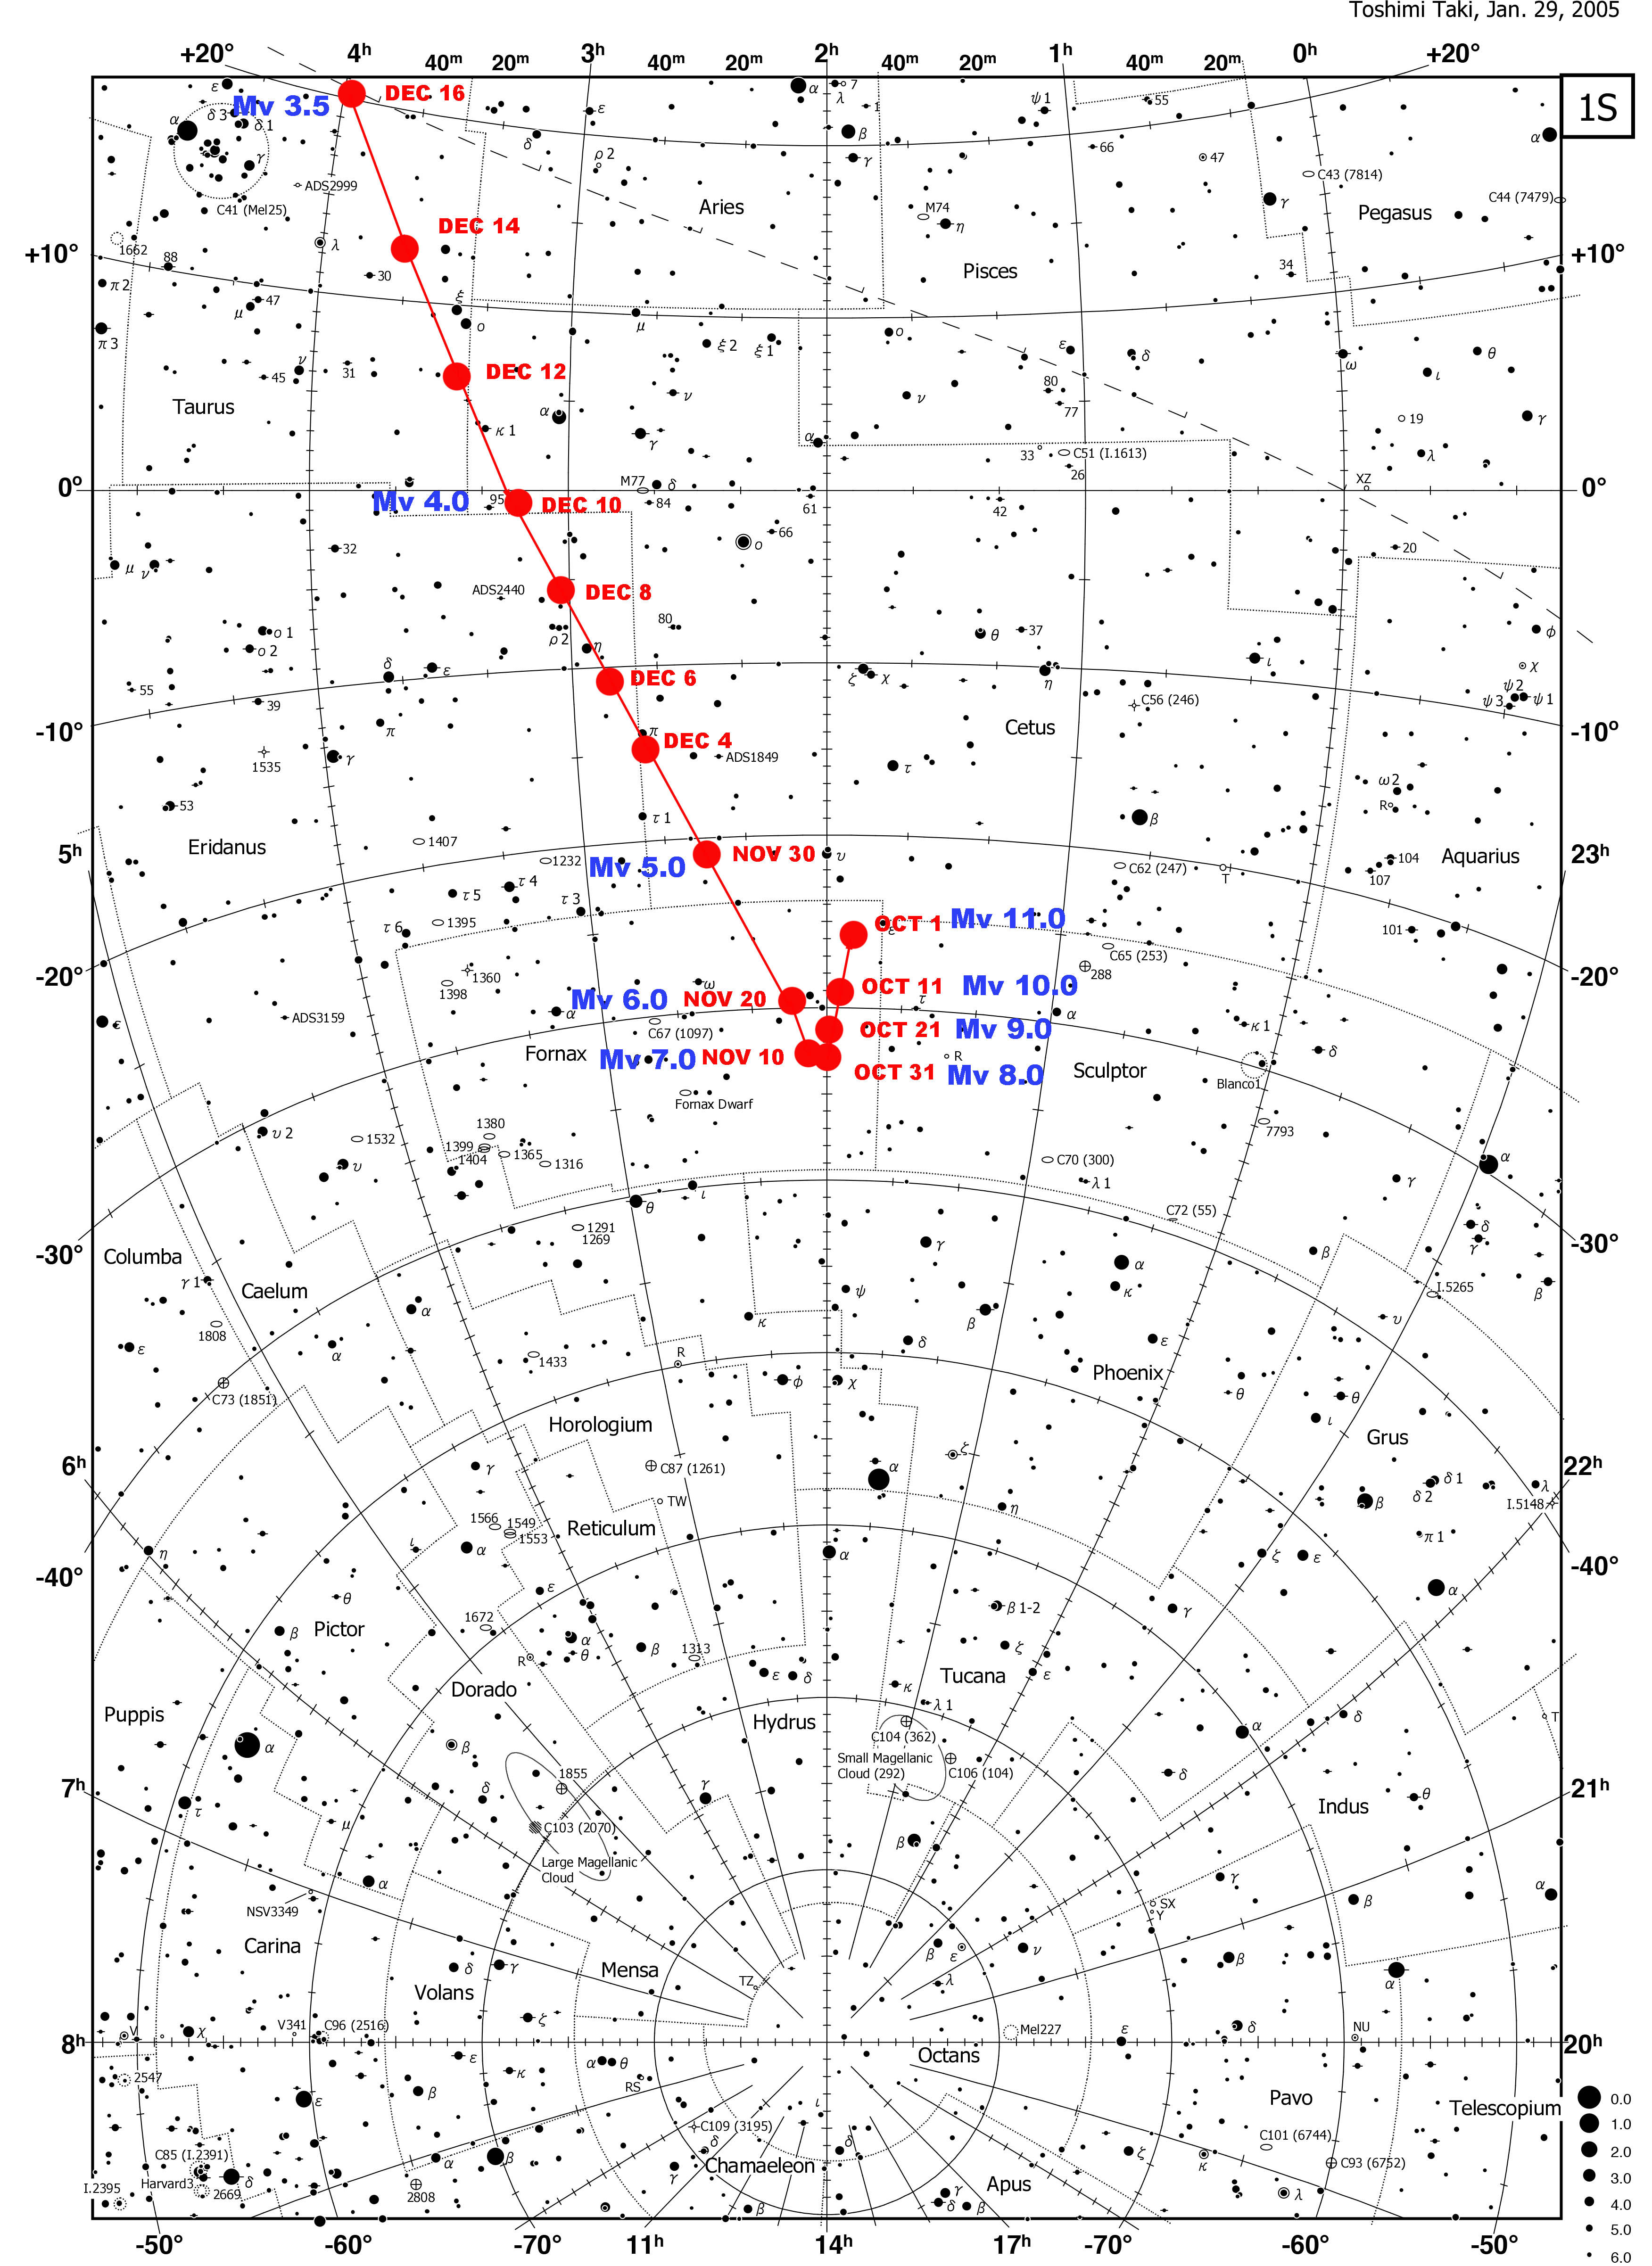 Comet 46p Wirtanen Finder Chart